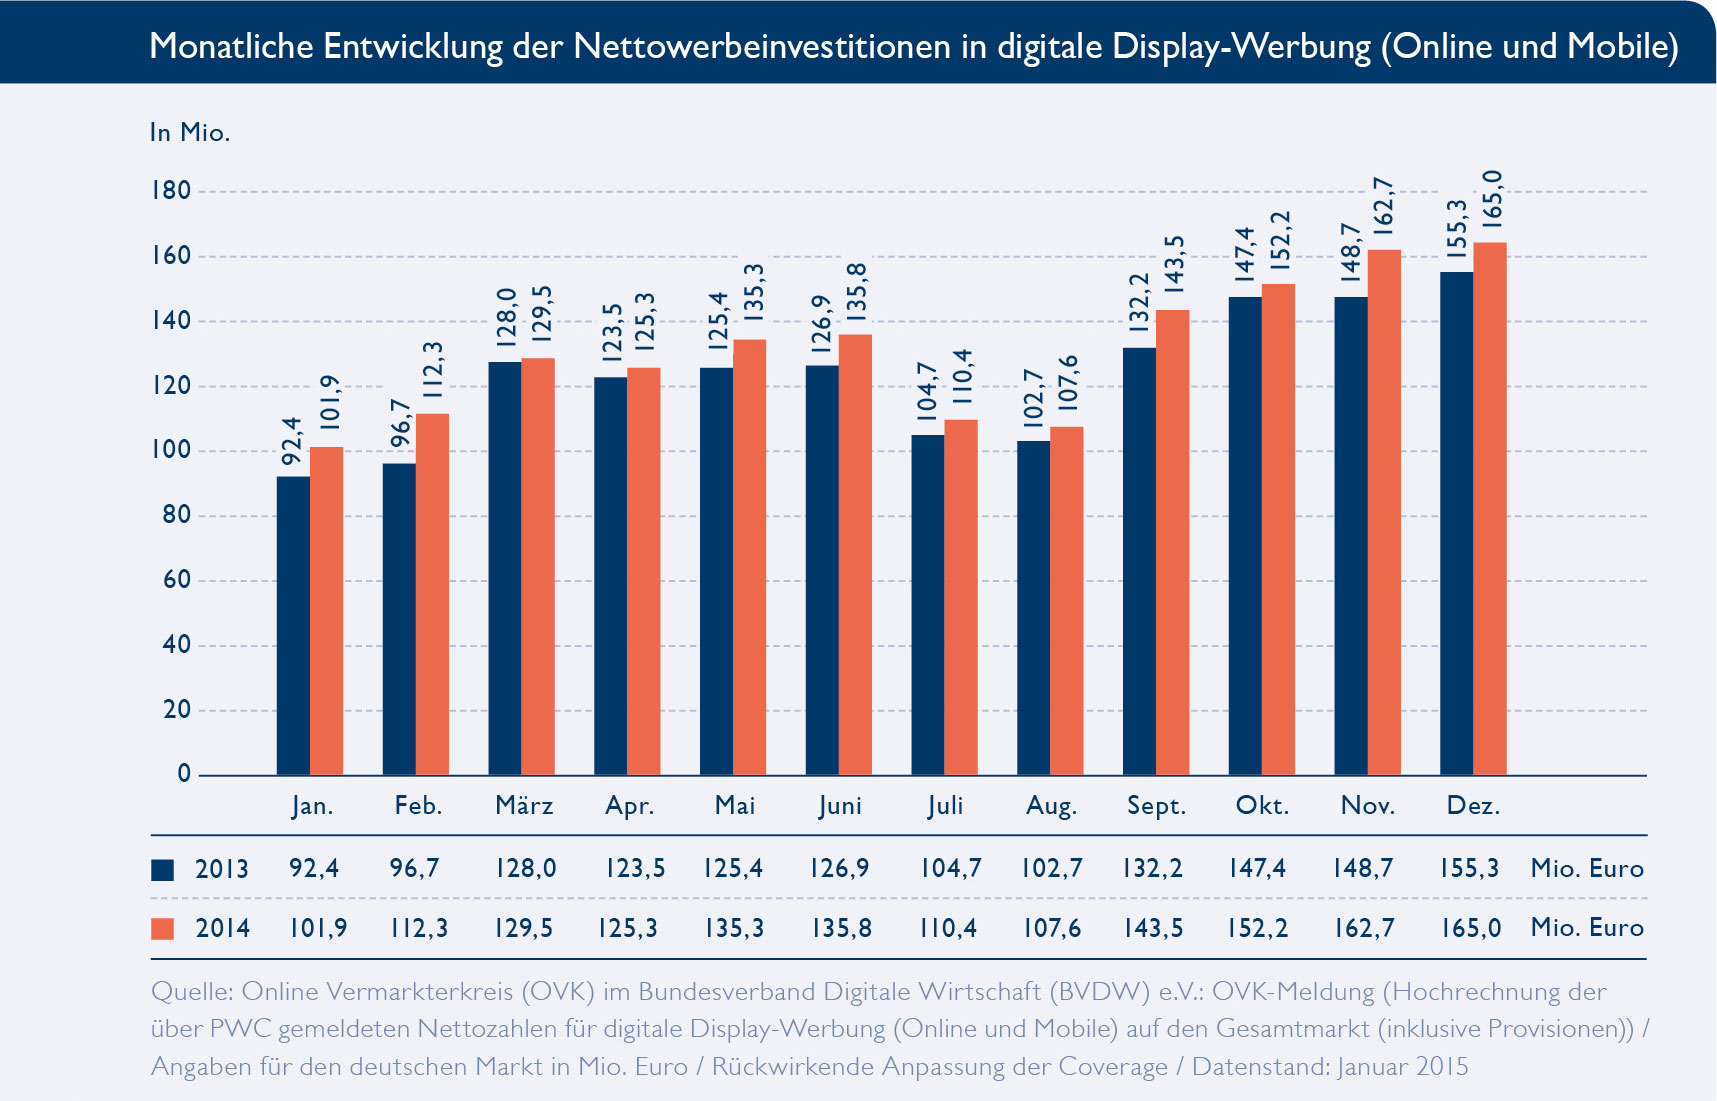 Monatliche Entwicklung der Nettowerbeinvestitionen in digitale Display-Werbung (Online und Mobile). Quelle: OVK/BVDW.